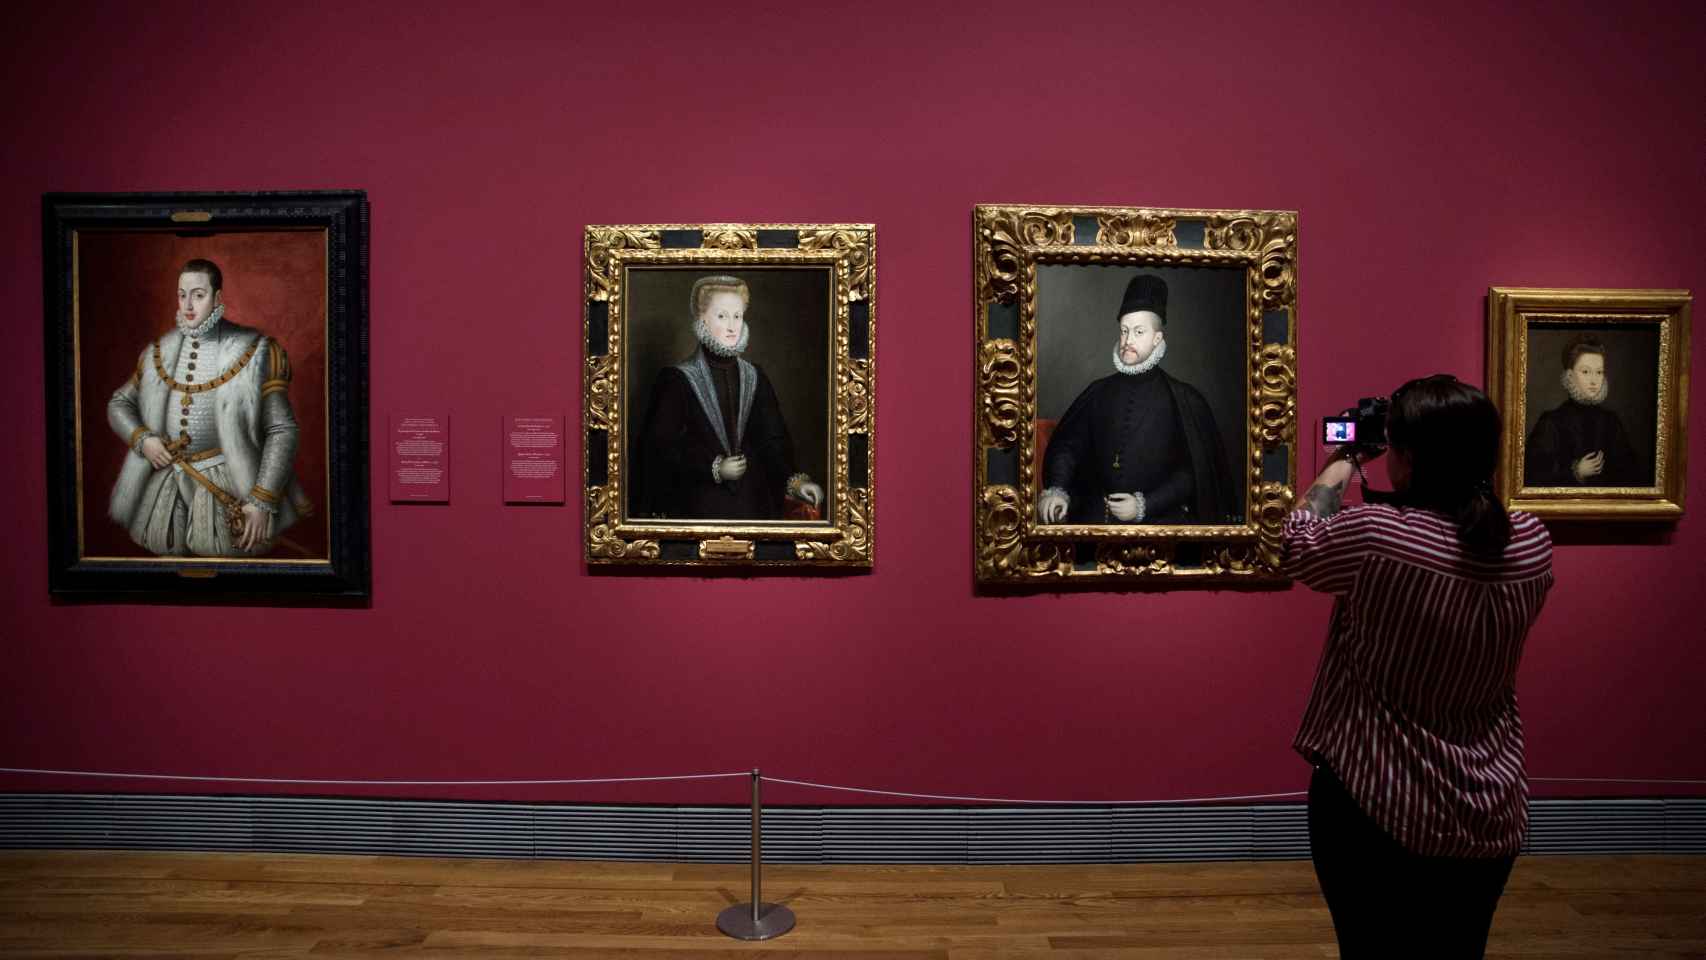 Retratos del príncipe Don Carlos, la reina Ana de Austria y Felipe II, los dos últimos obra de Sofonisba Anguissola. El original del primero no se conserva.